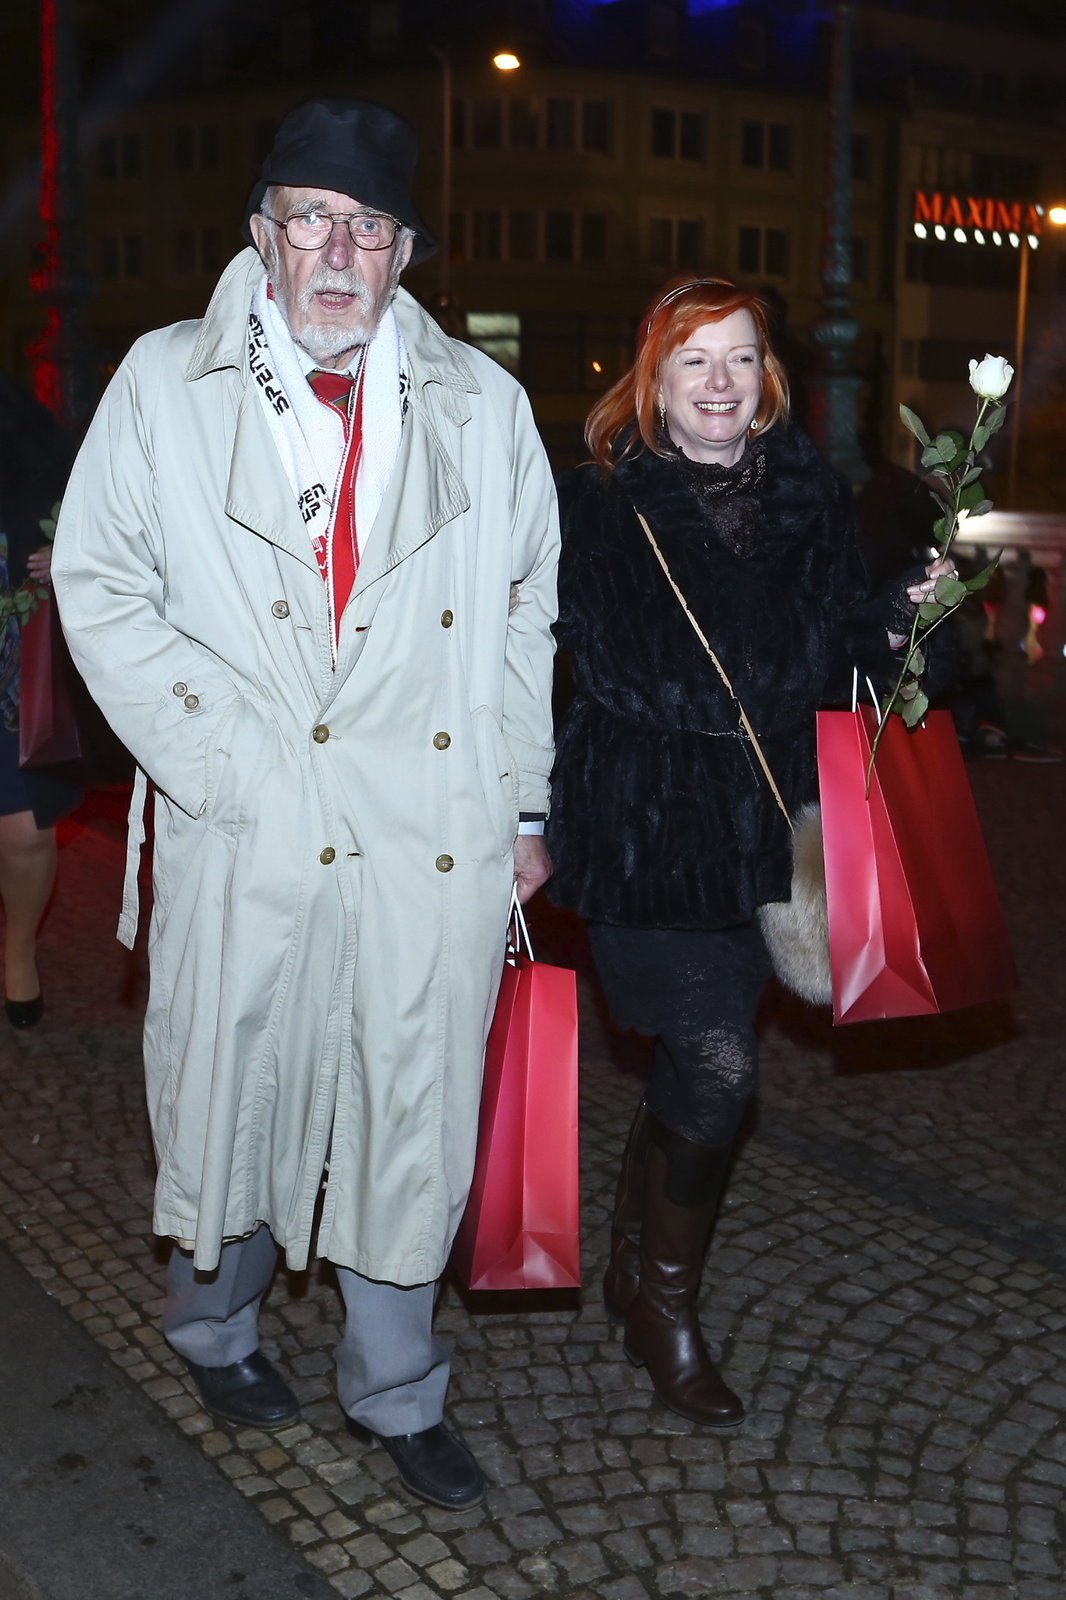 Bára se objevila na oslavě 20. narozenin TV Nova s kamarádem Jiřím Melíškem (81). Známý scenárista, který napsal mimo jiné komedii Ať žijí duchové, v roce 2002 ovdověl. Jeho žena Olga (69), známá manekýna, podlehla rakovině.